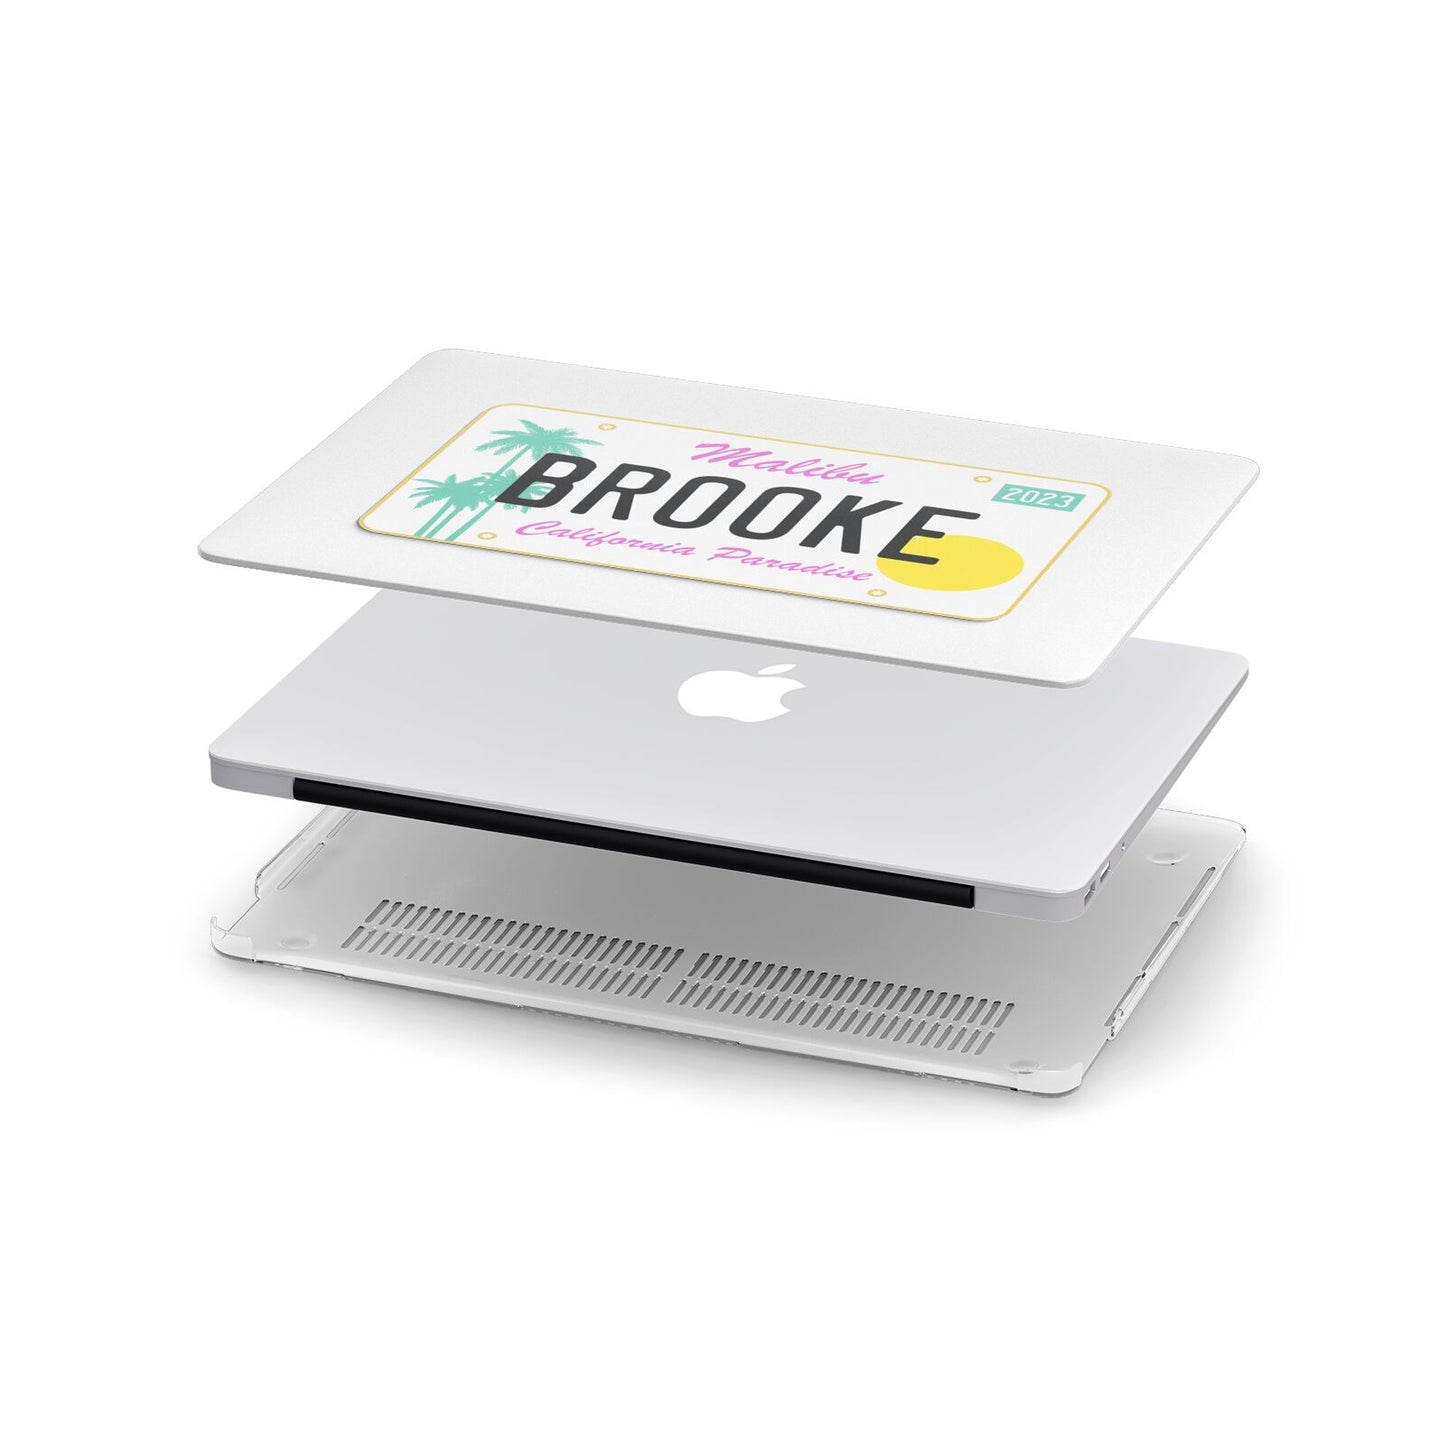 Personalised Malibu License Plate Apple MacBook Case in Detail